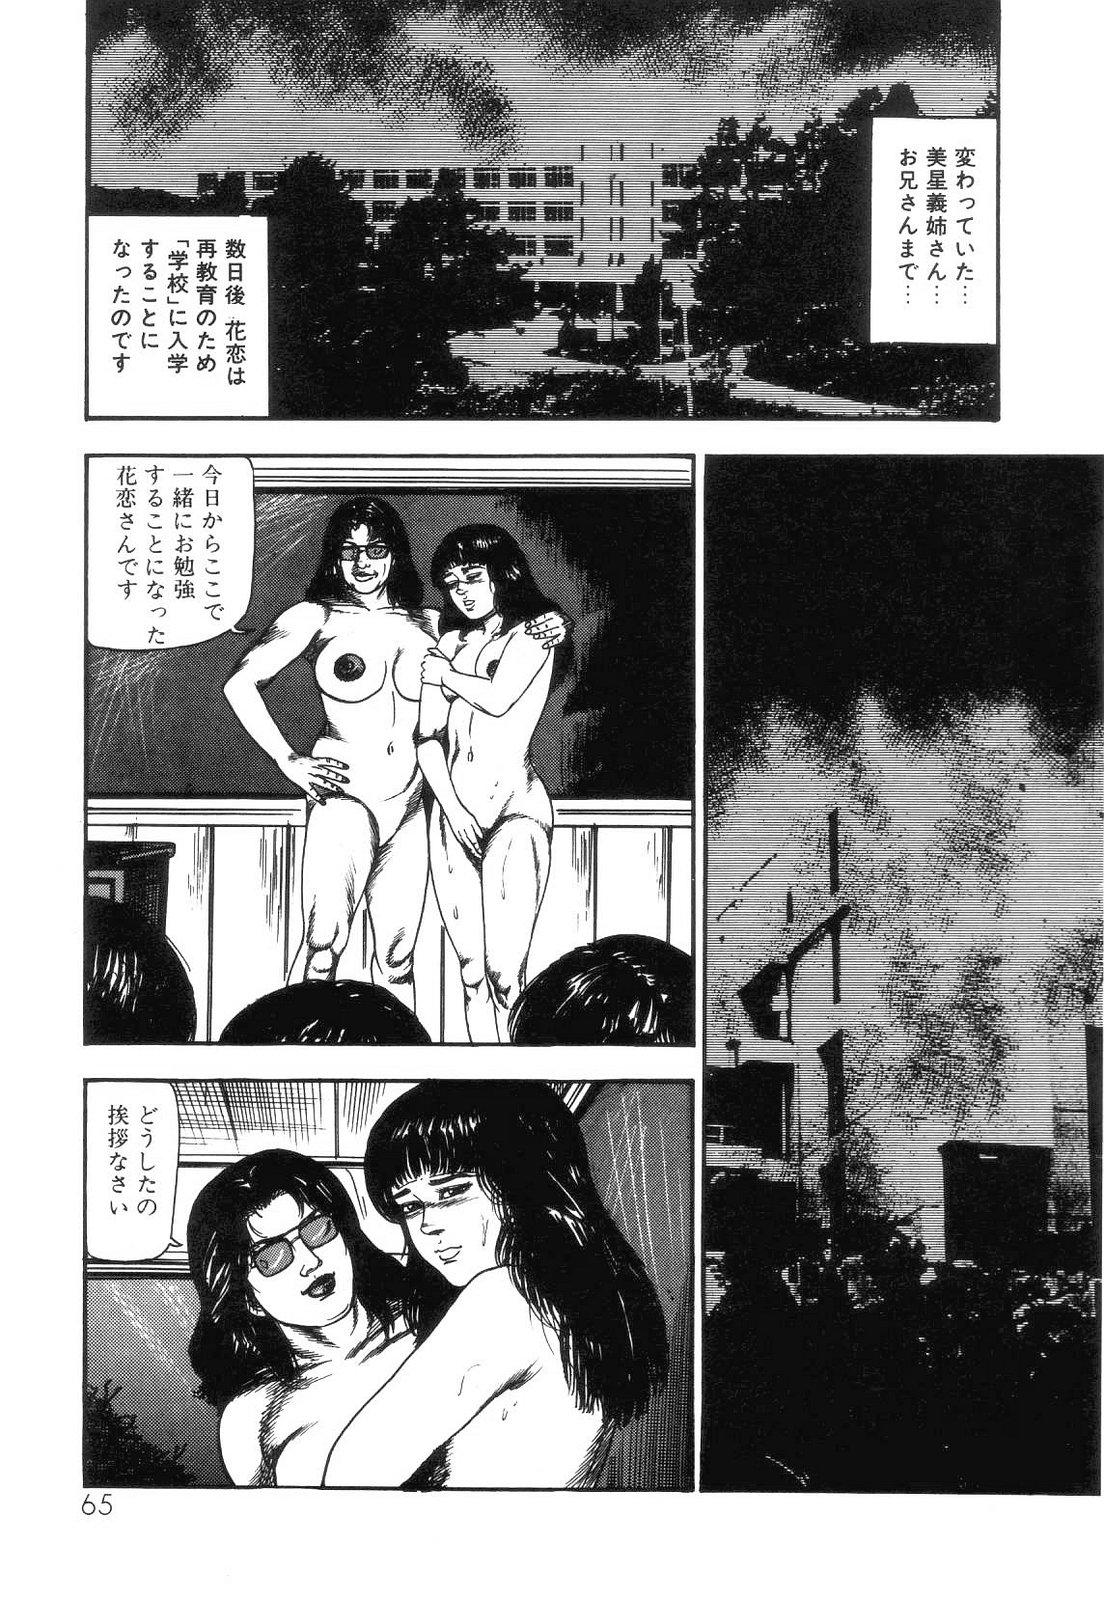 Shiro no Mokushiroku Vol. 4 - Bichiku Karen no Shou 66